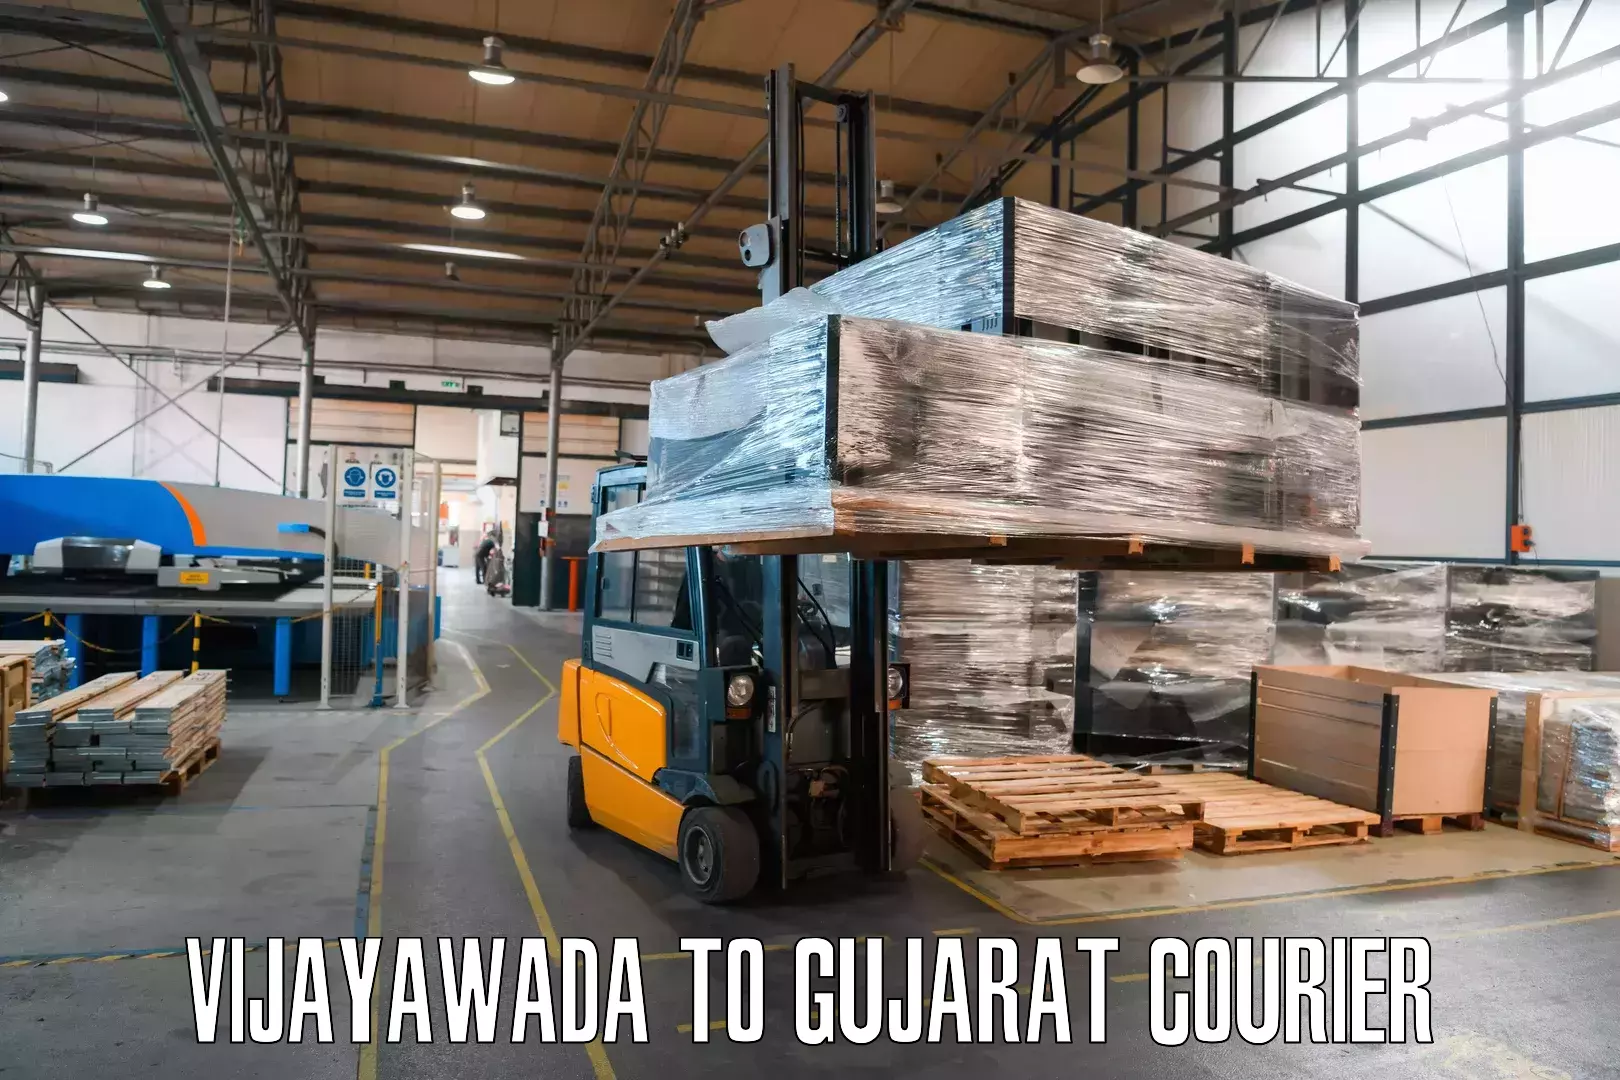 Lightweight parcel options Vijayawada to IIIT Vadodara